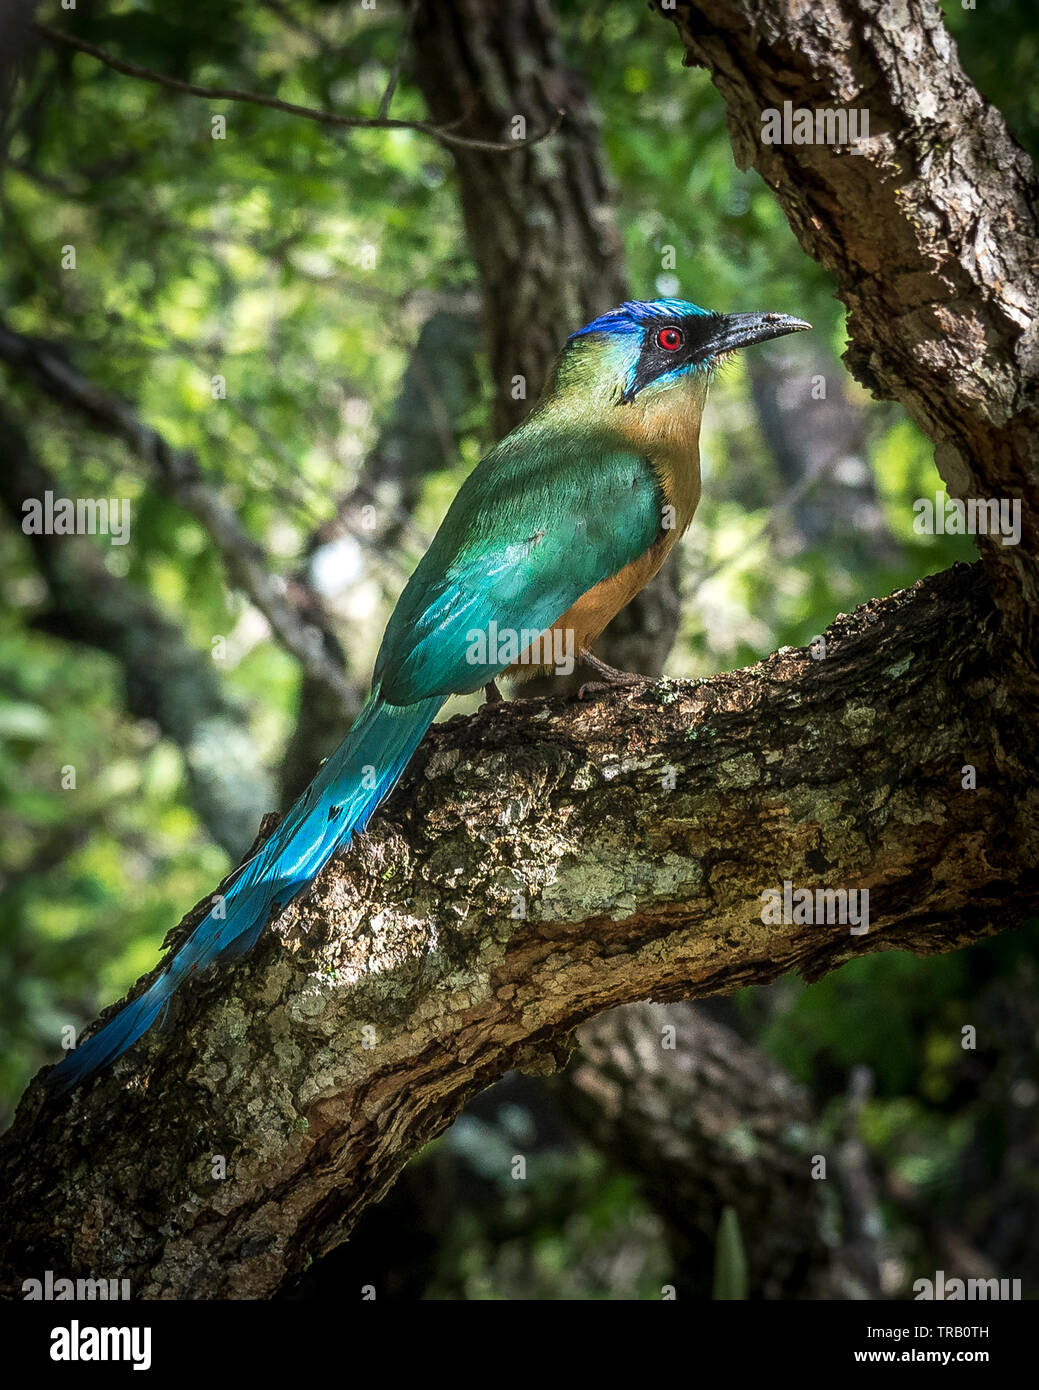 pretty colorful wild bird Stock Photo